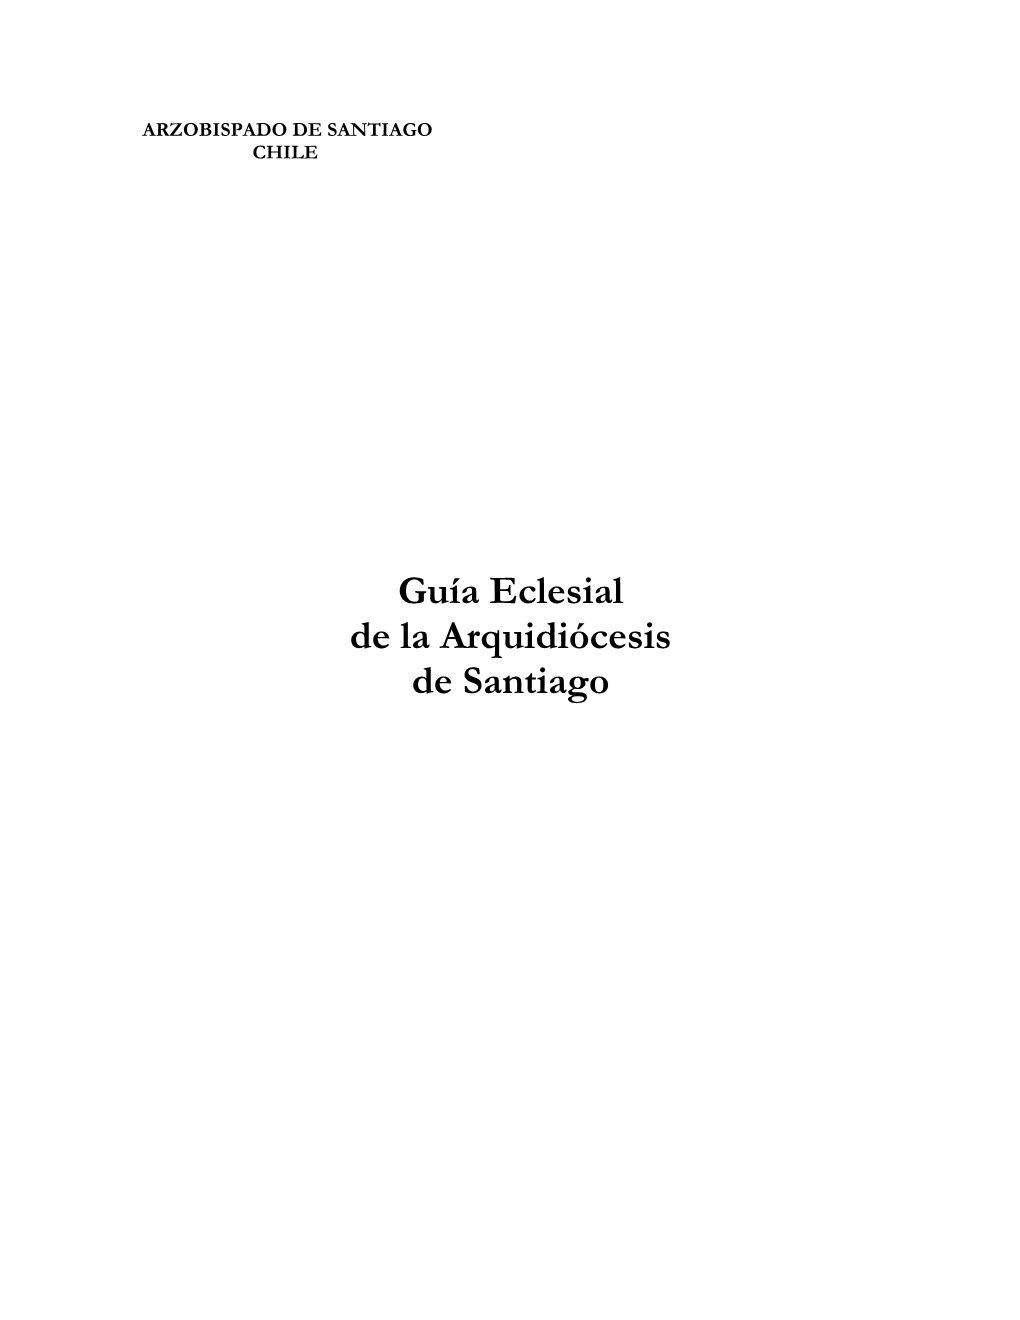 Guía Eclesial De La Arquidiócesis De Santiago - 2